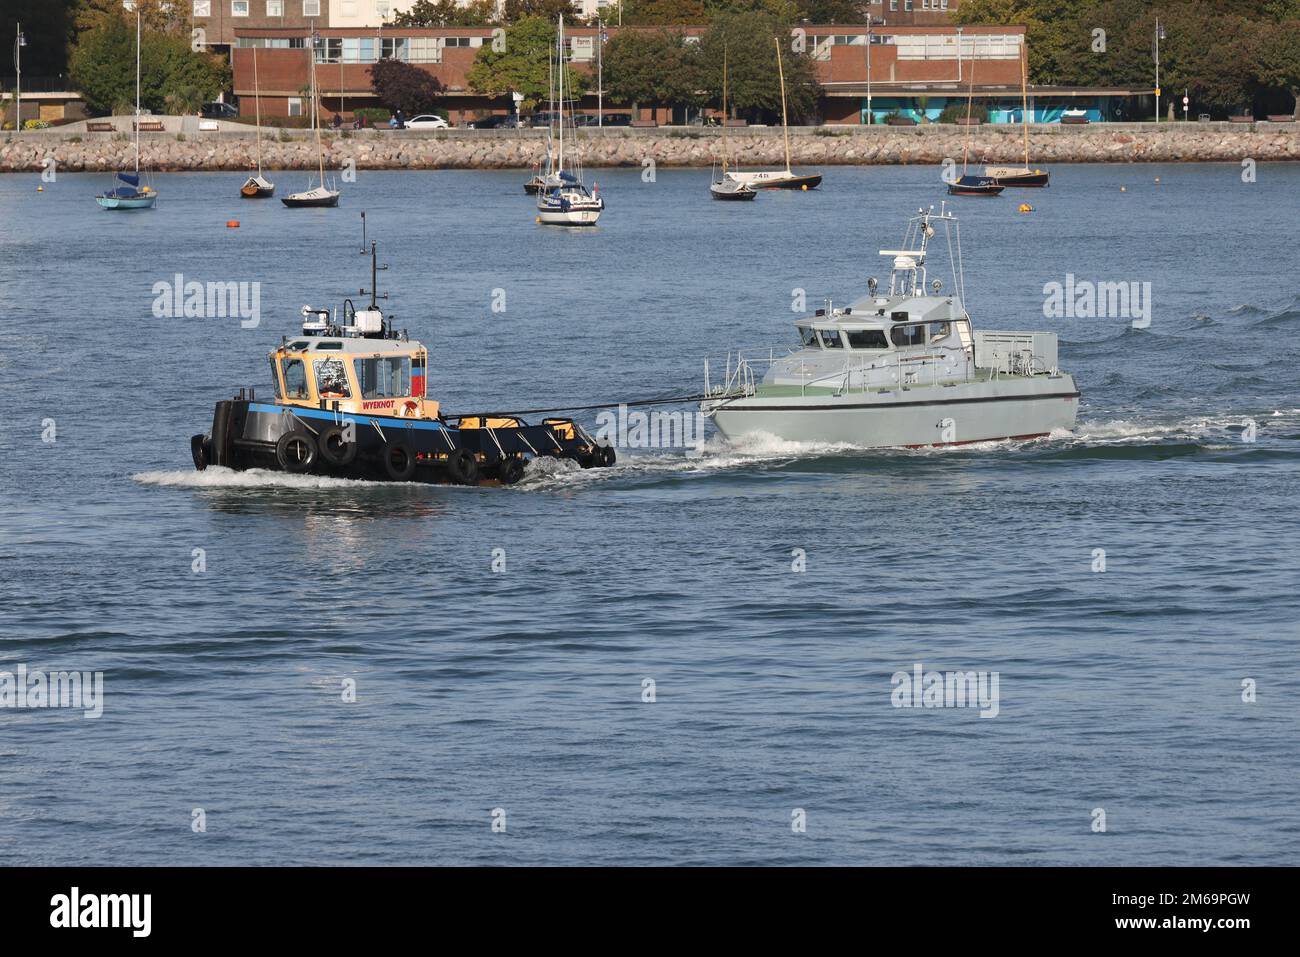 Il rimorchiatore WYEKNOT traina l'ex-Royal Navy pattuglia SABER fuori dal porto Foto Stock